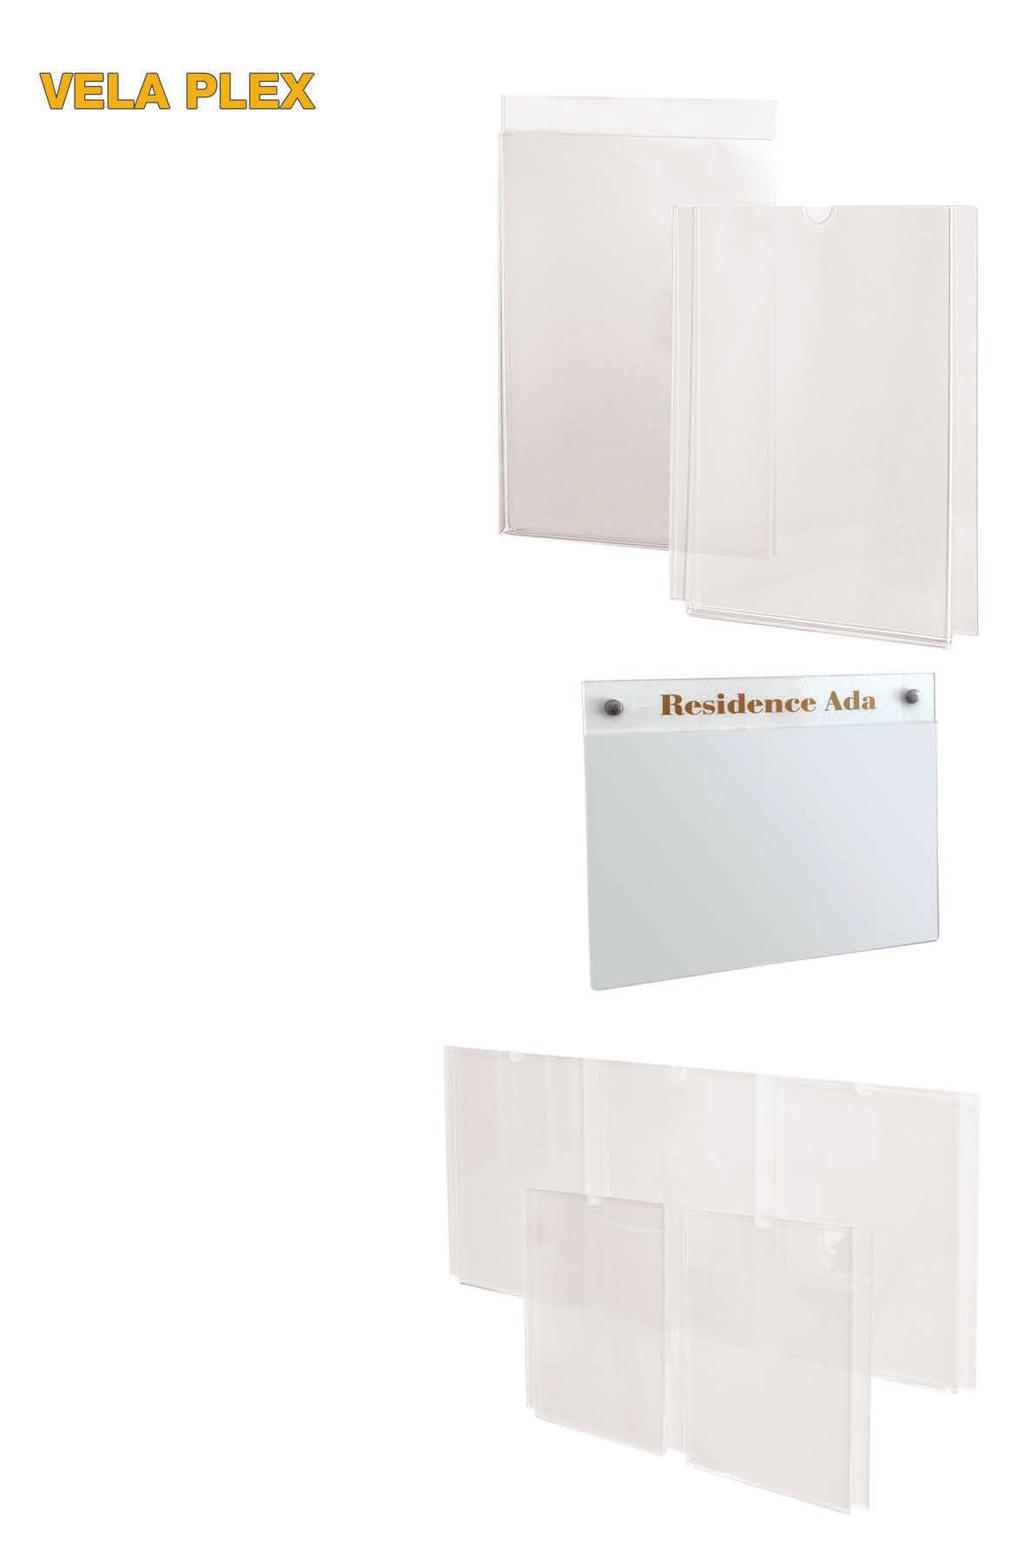 VELA PLEX Tasca porta messaggi realizzata in Perspex trasparente, disponibile sia per fissaggio a parete con biadesivo, sia per fissaggio a sospensione con pinze e tiranti.